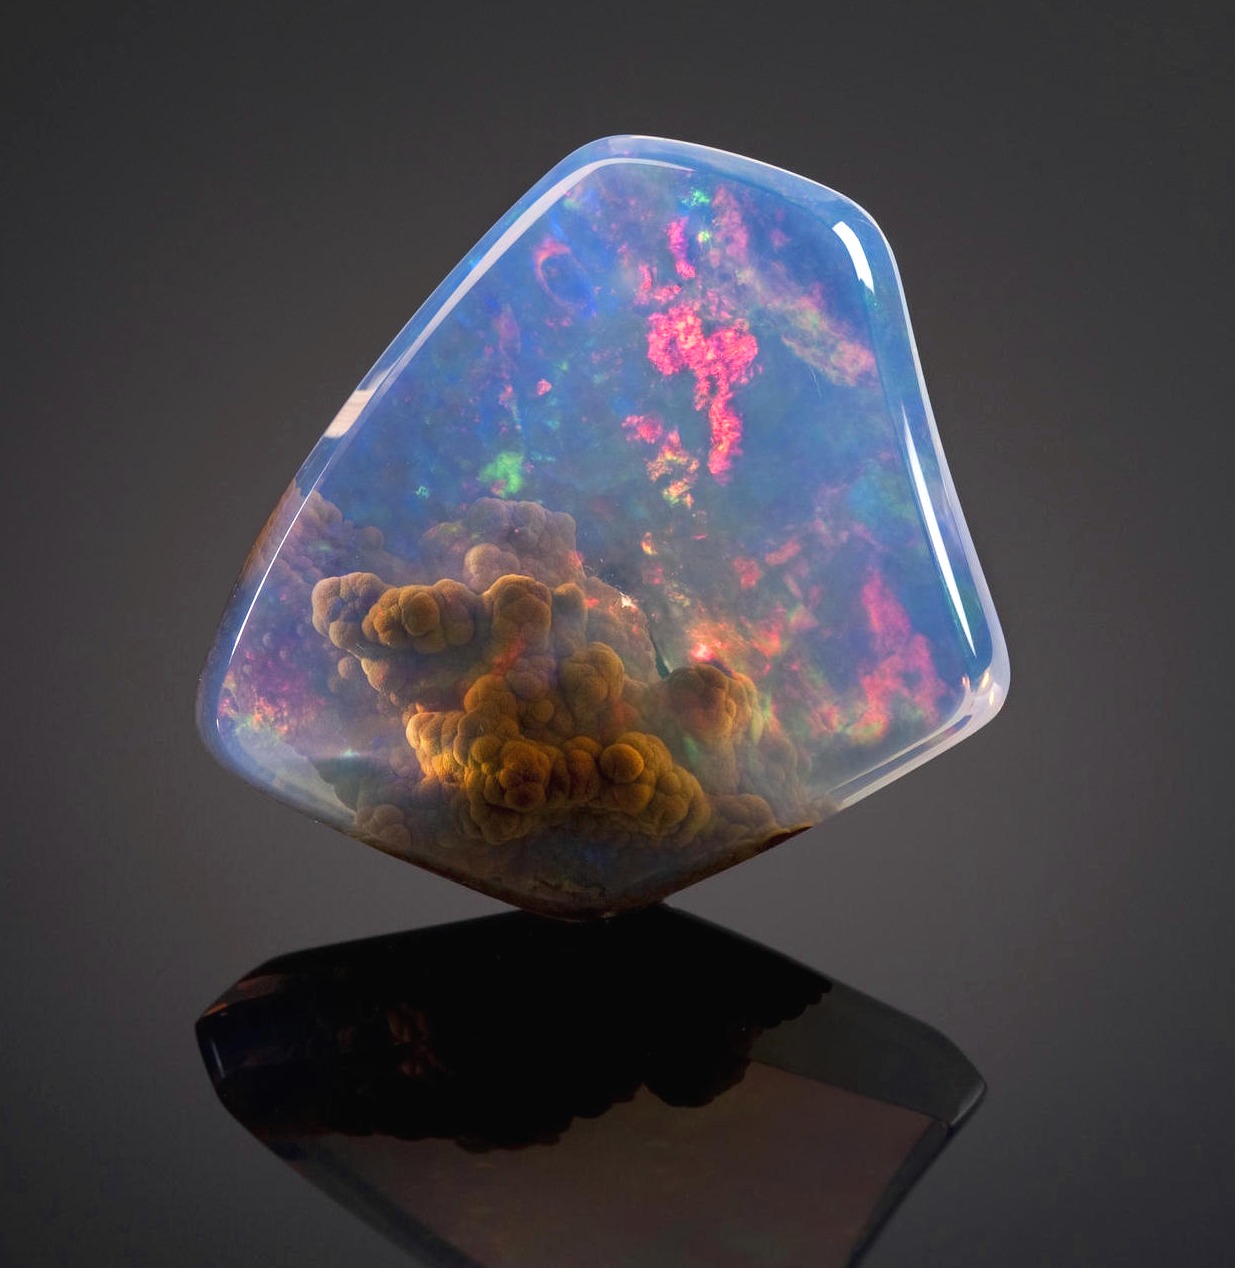 La pietra opale qui sopra è stata trovata in Oregon, nell'Opal Butte. Al suo interno, sembra essere intrappolata una nebulosa in miniatura.